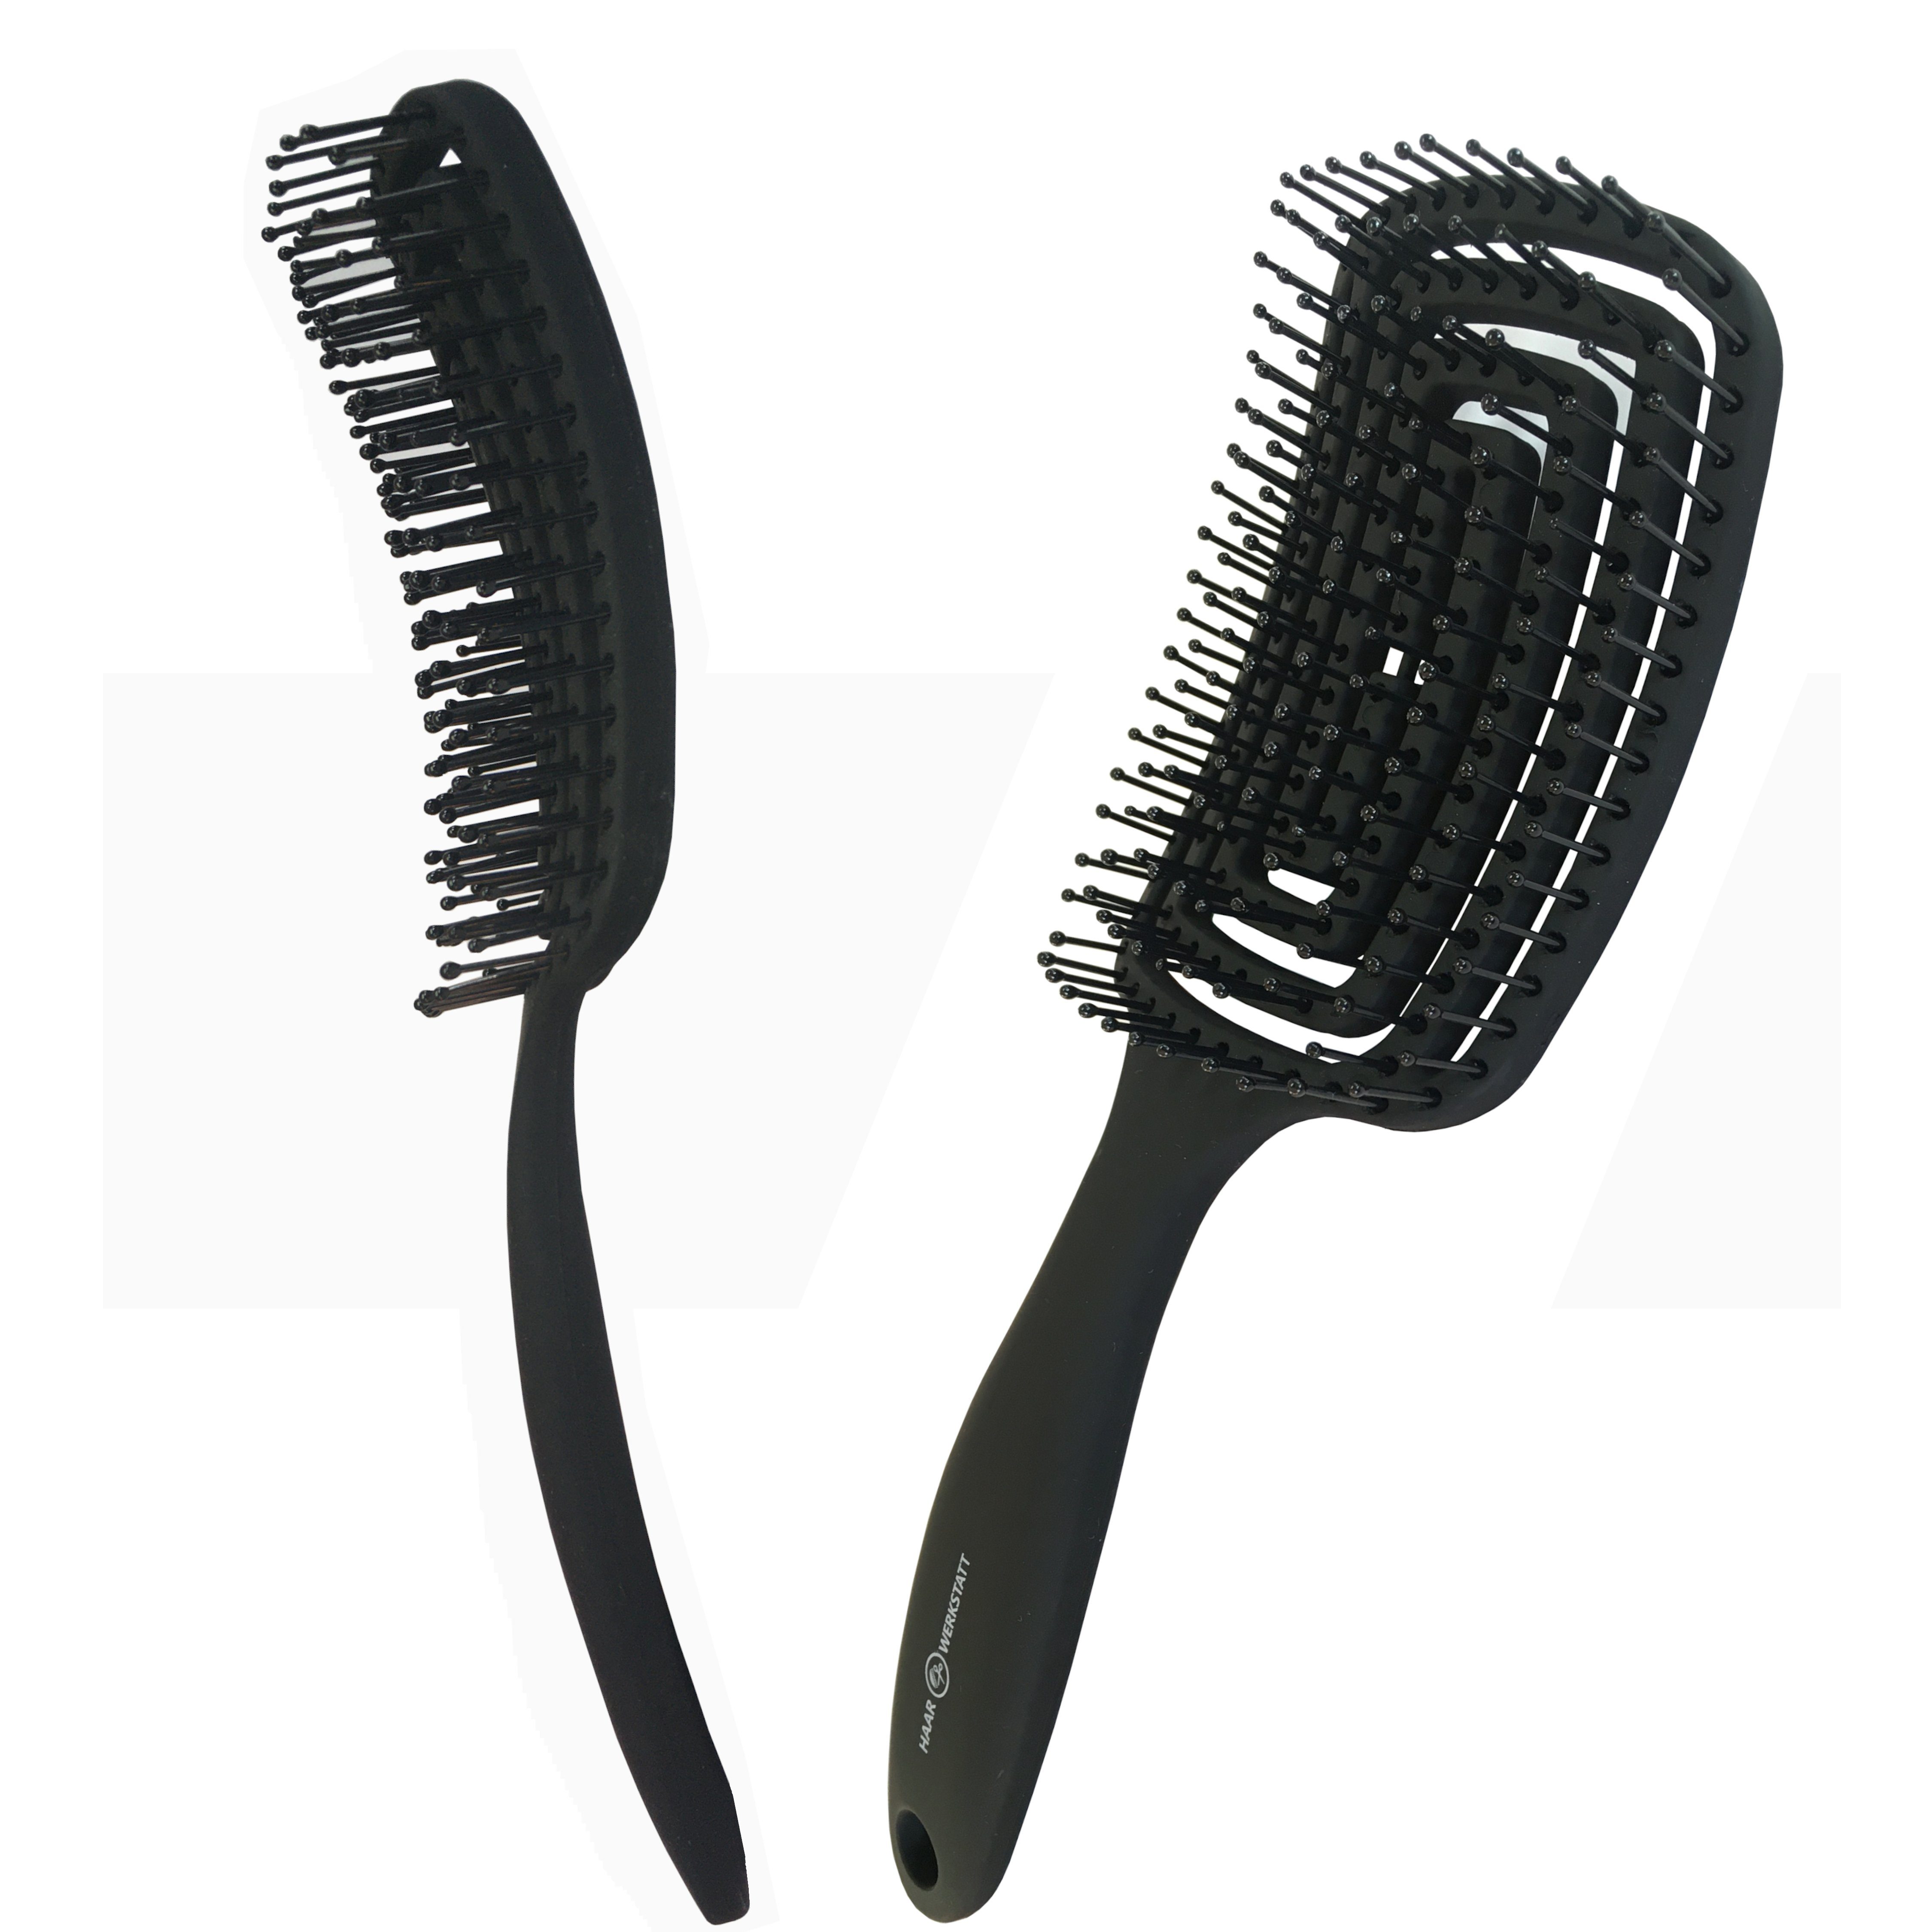 Haarwerkstatt Haarbürste Haar, - - curved für Ihr Die für Haarbürste Herren mit Schwarz Haarbürste Gebogene Borsten optimale weiche Entwirrungsbürste brush und Damen, Kinder Profi